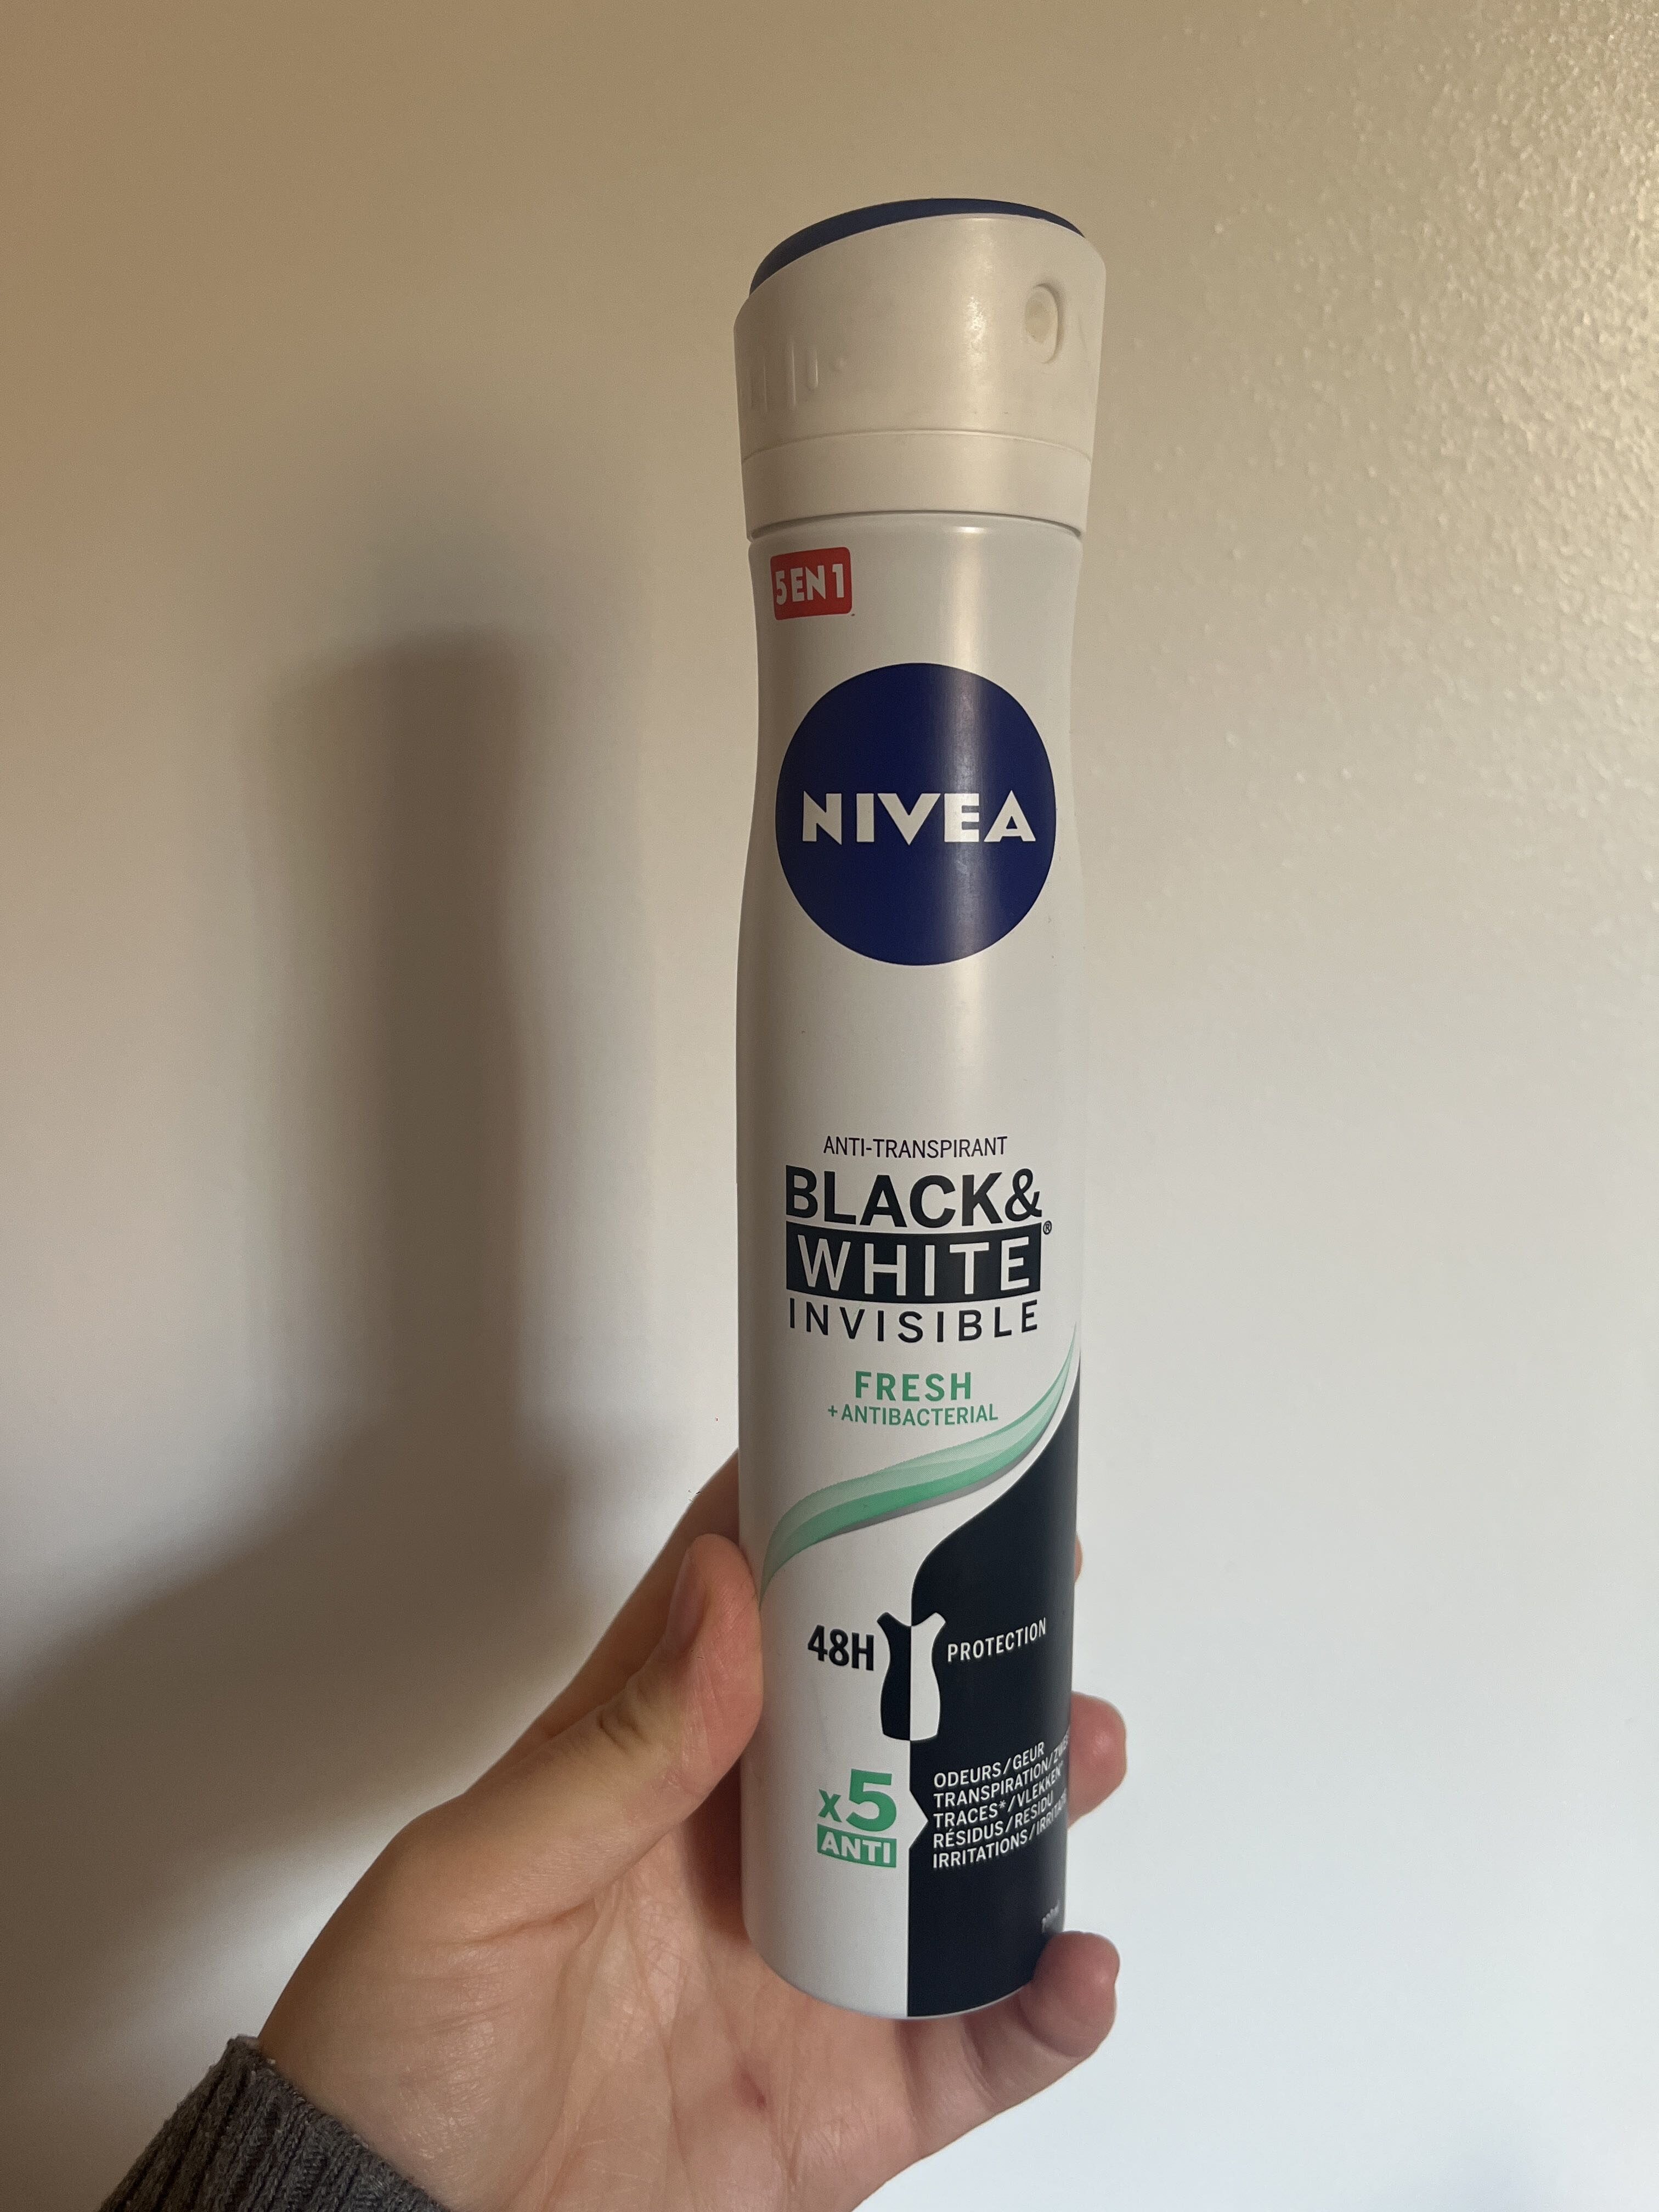 Déodorant Nivea black & white invisible - Tuote - fr